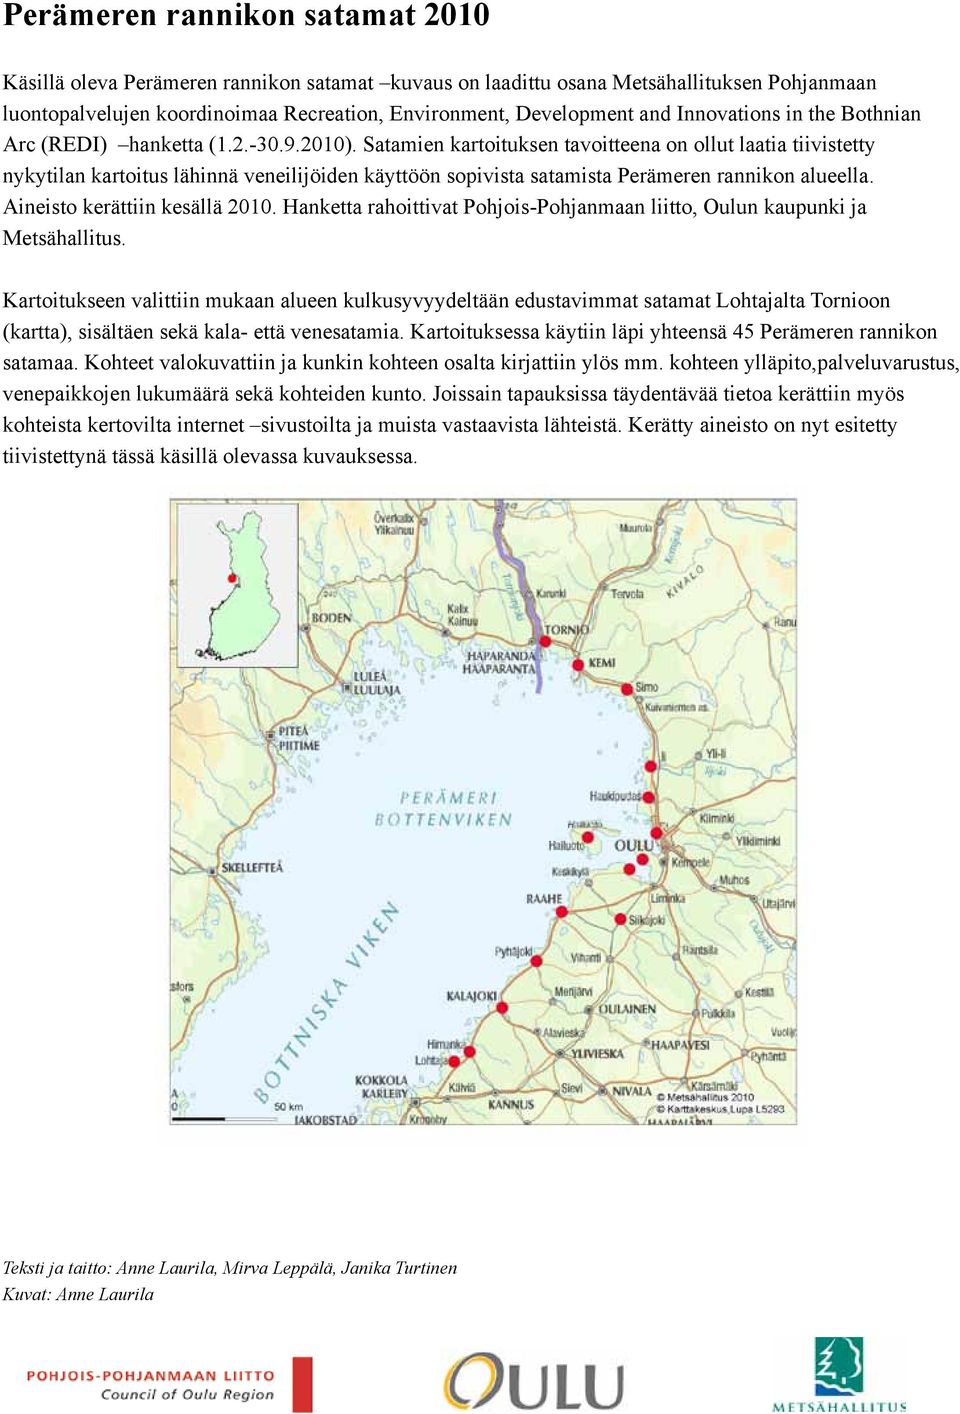 Satamien kartoituksen tavoitteena on ollut laatia tiivistetty nykytilan kartoitus lähinnä veneilijöiden käyttöön sopivista satamista Perämeren rannikon alueella. Aineisto kerättiin kesällä 2010.